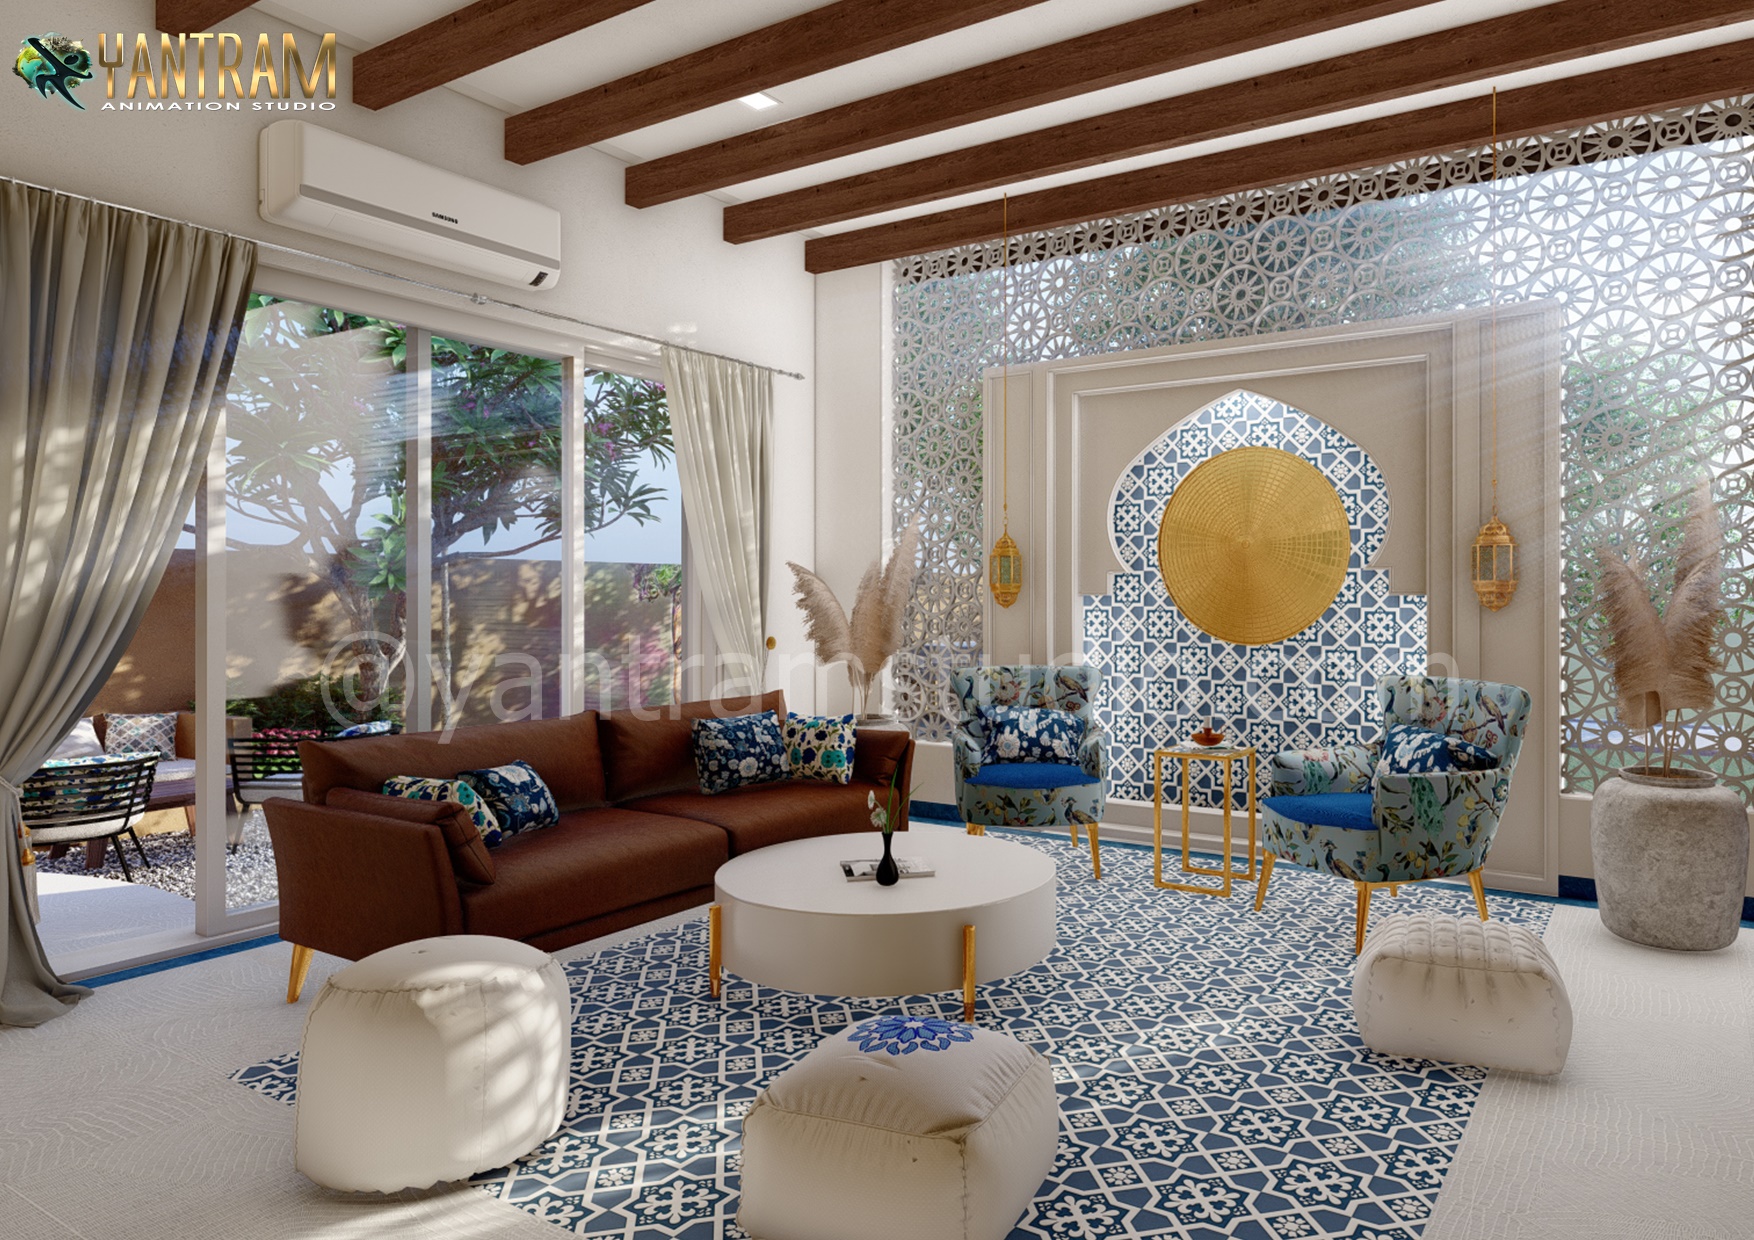 3d interior rendering services hotel resort bedroom design Studio lilodhyan